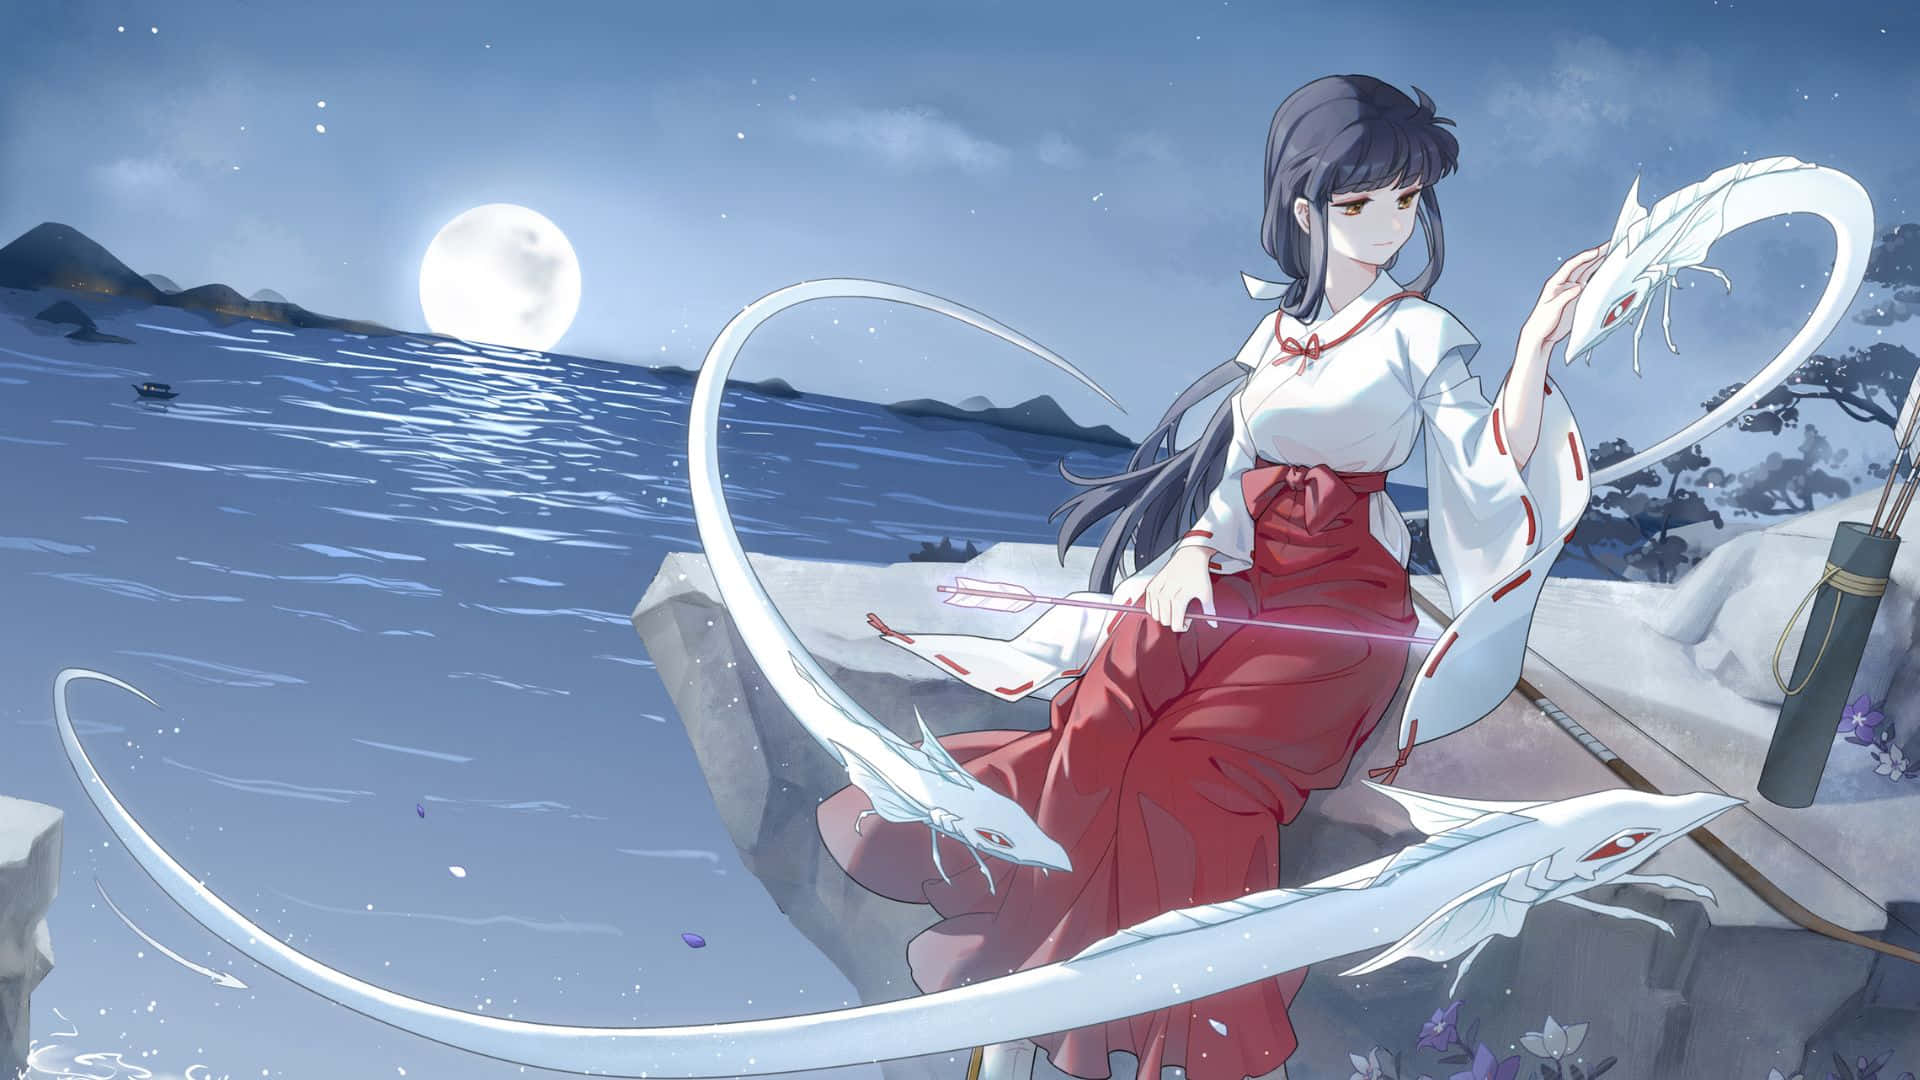 Enchanting Illustration of Kikyo in the Moonlight Wallpaper